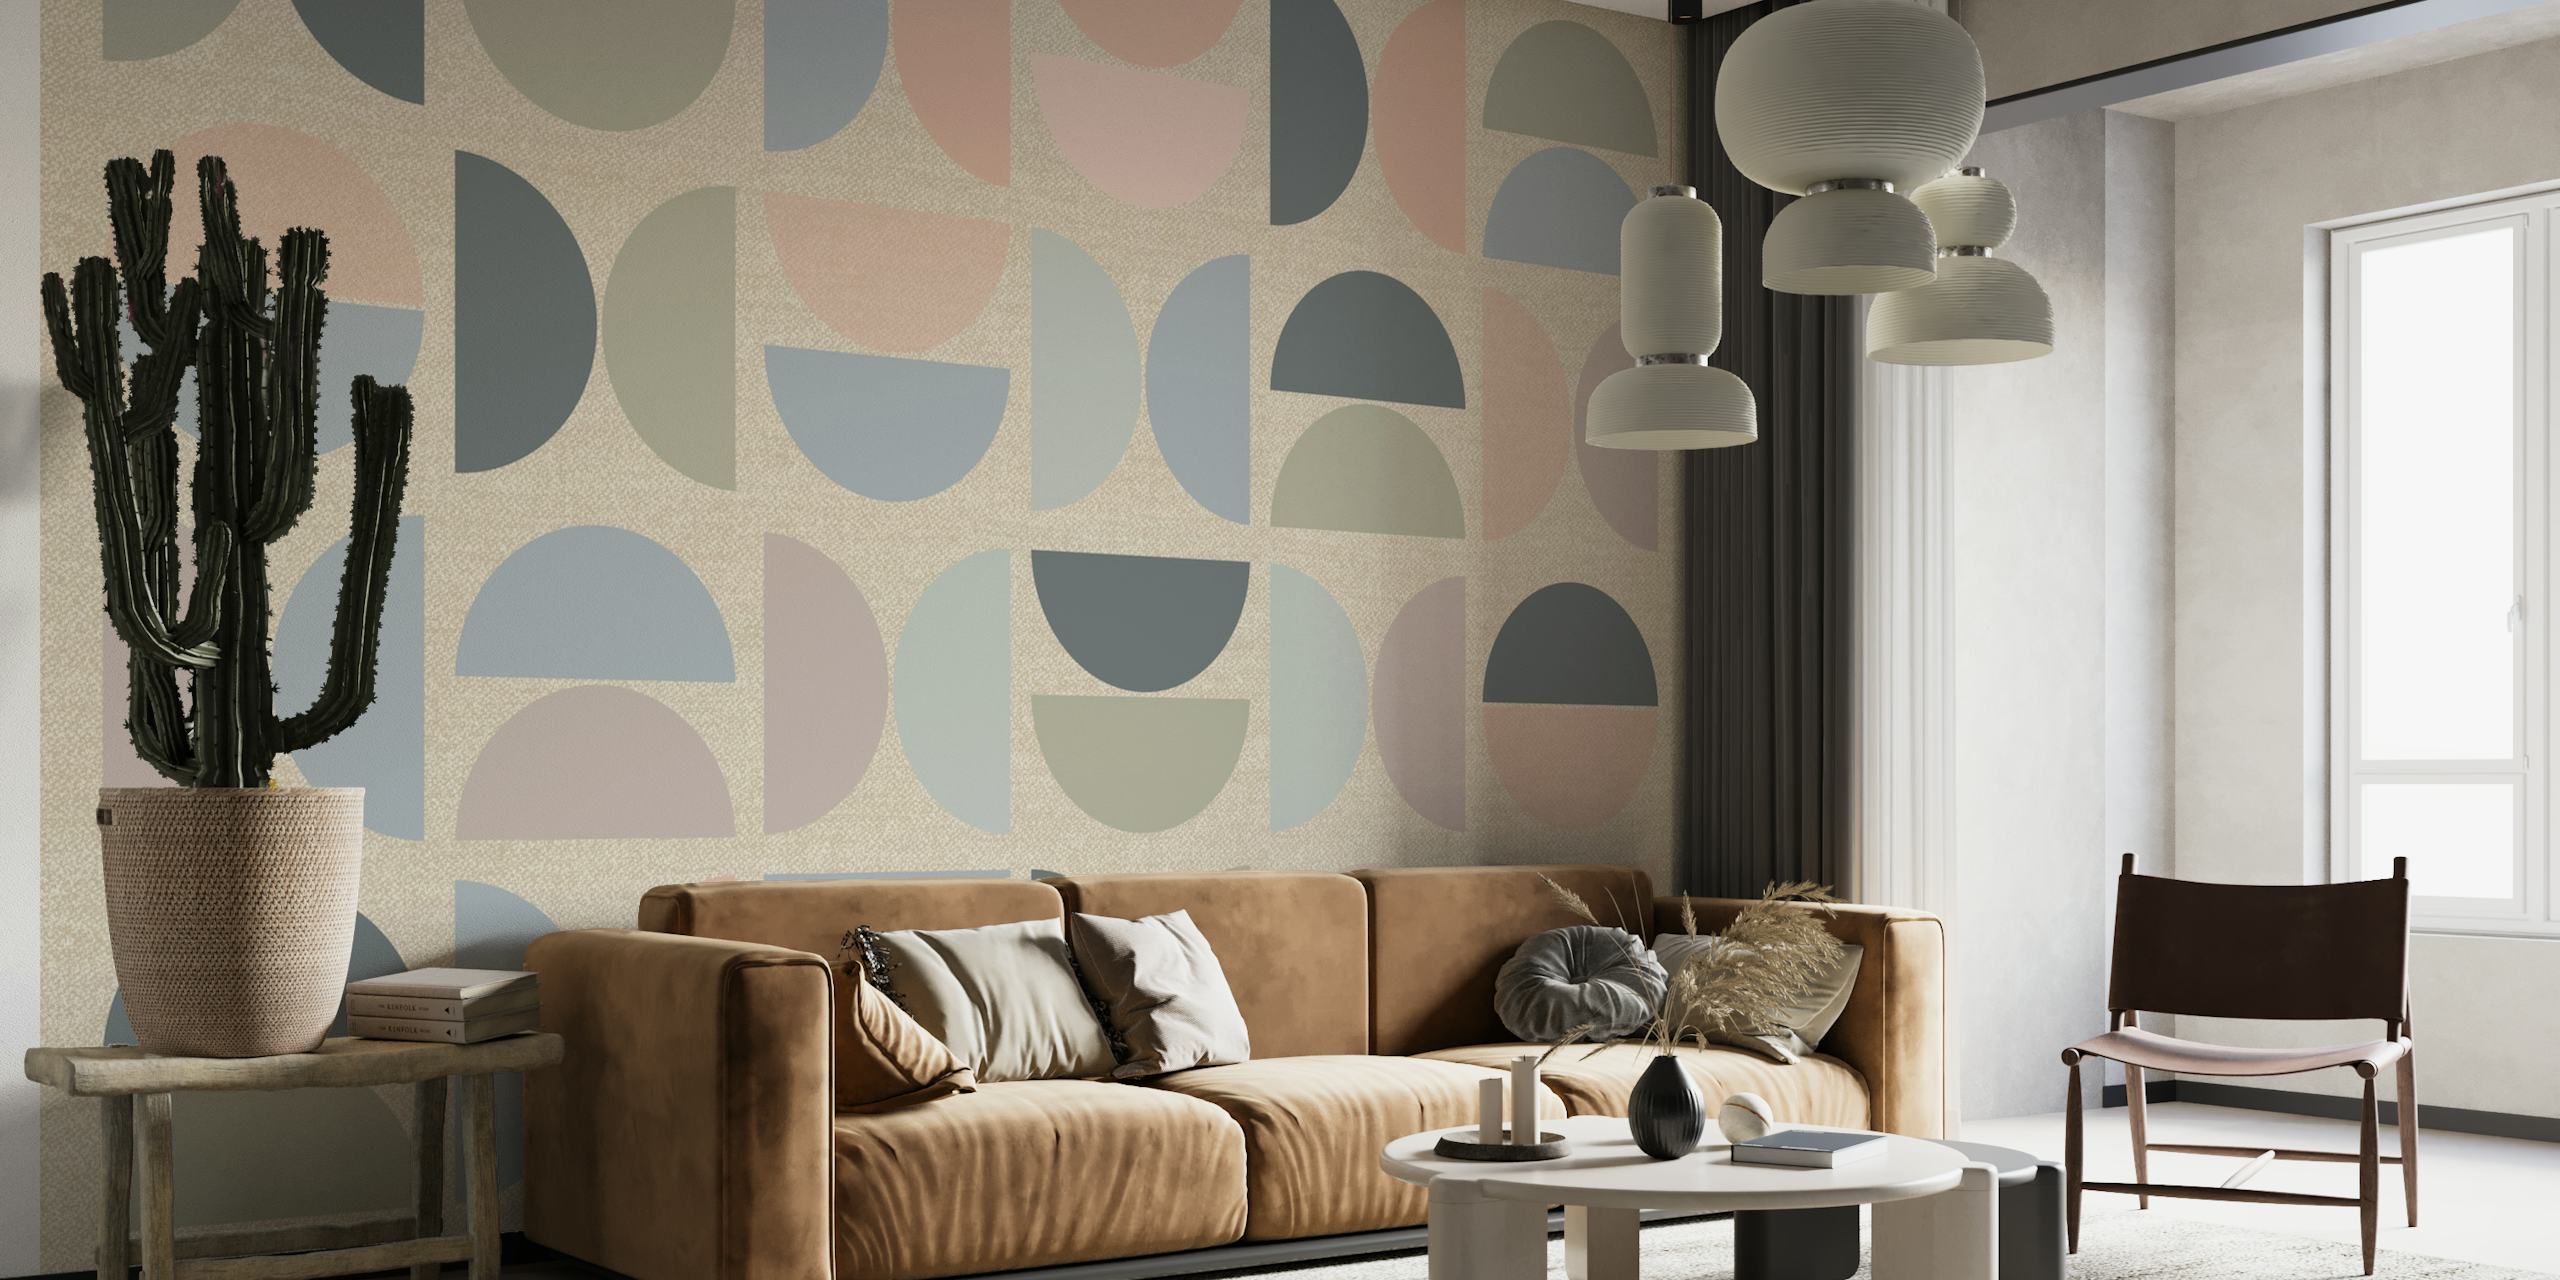 Mykistetty pastelli Bauhaus -tyylinen seinämaalaus geometrisillä muodoilla pehmeissä väreissä